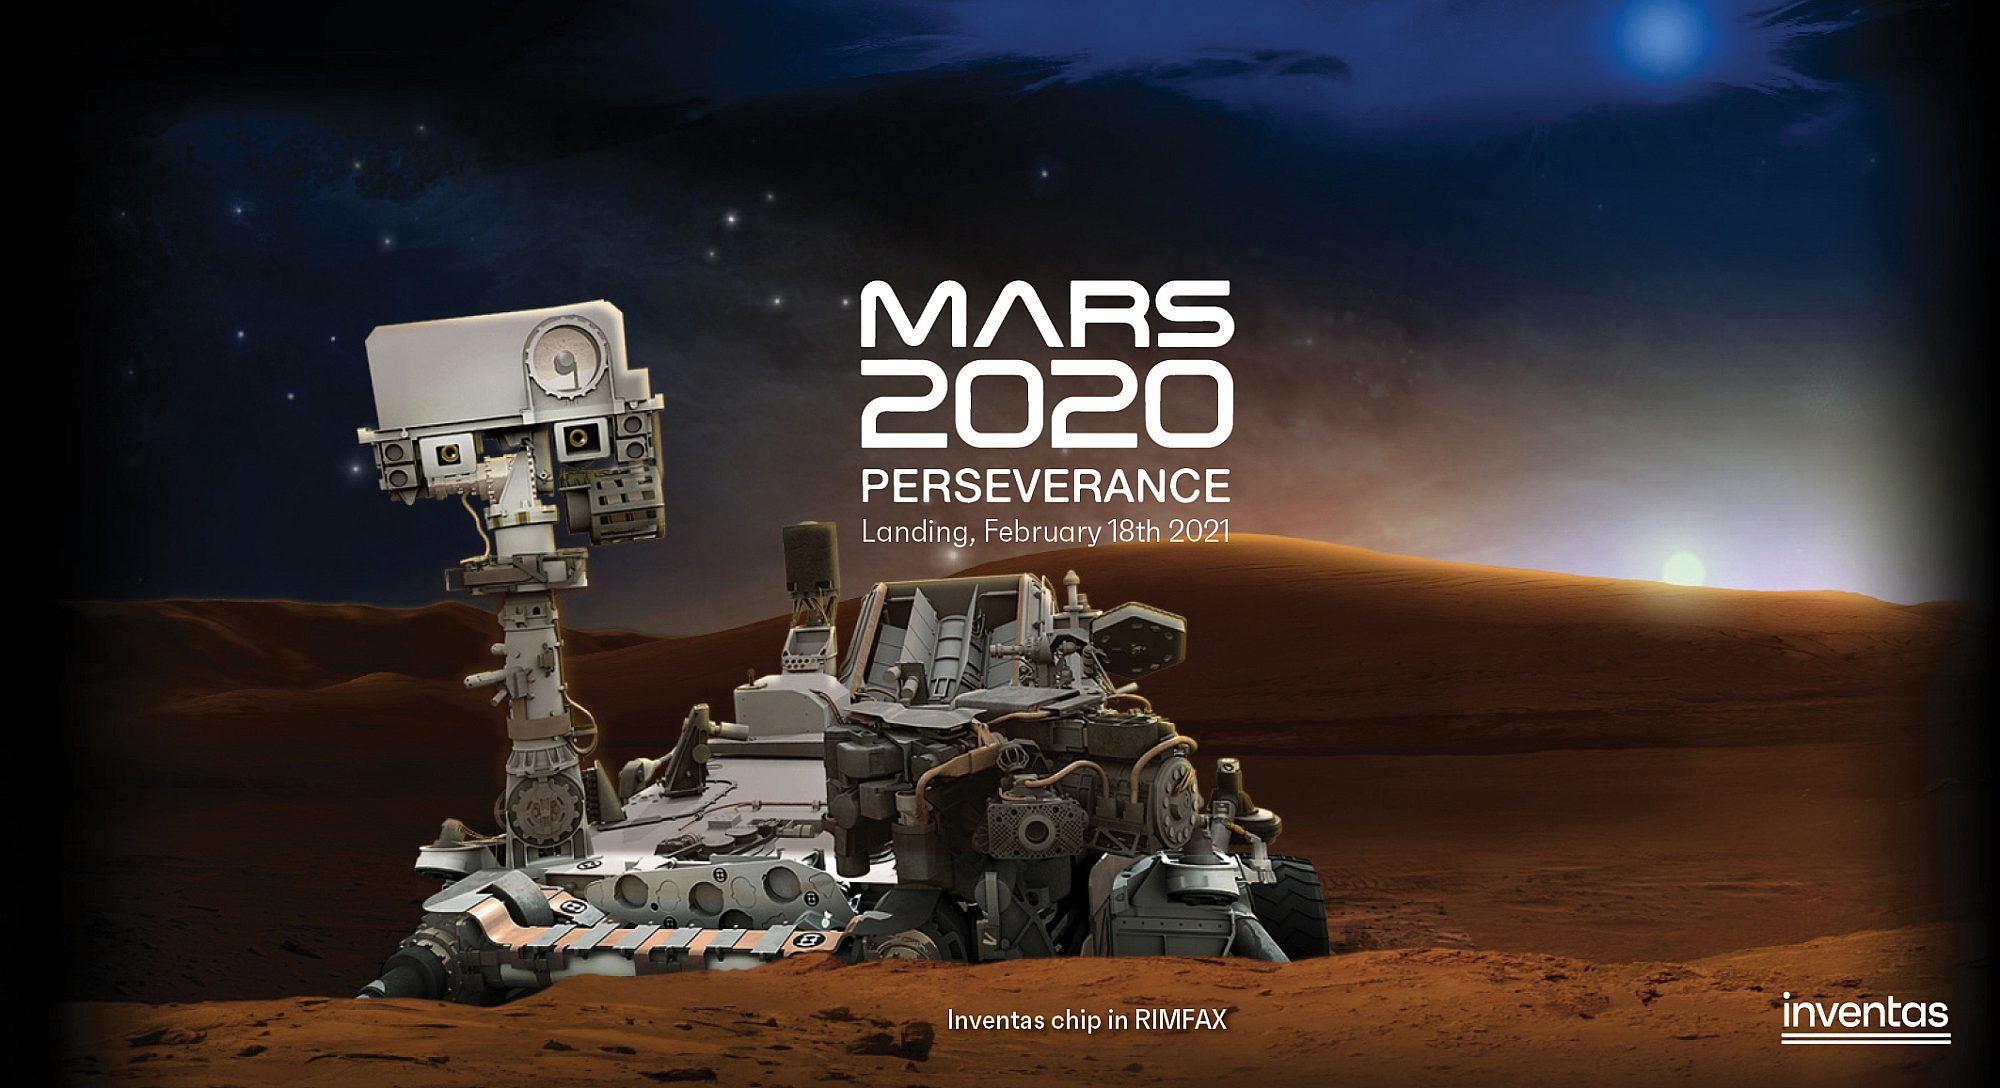 Bli med på Mars Rover 2020 landingen hos Inventas